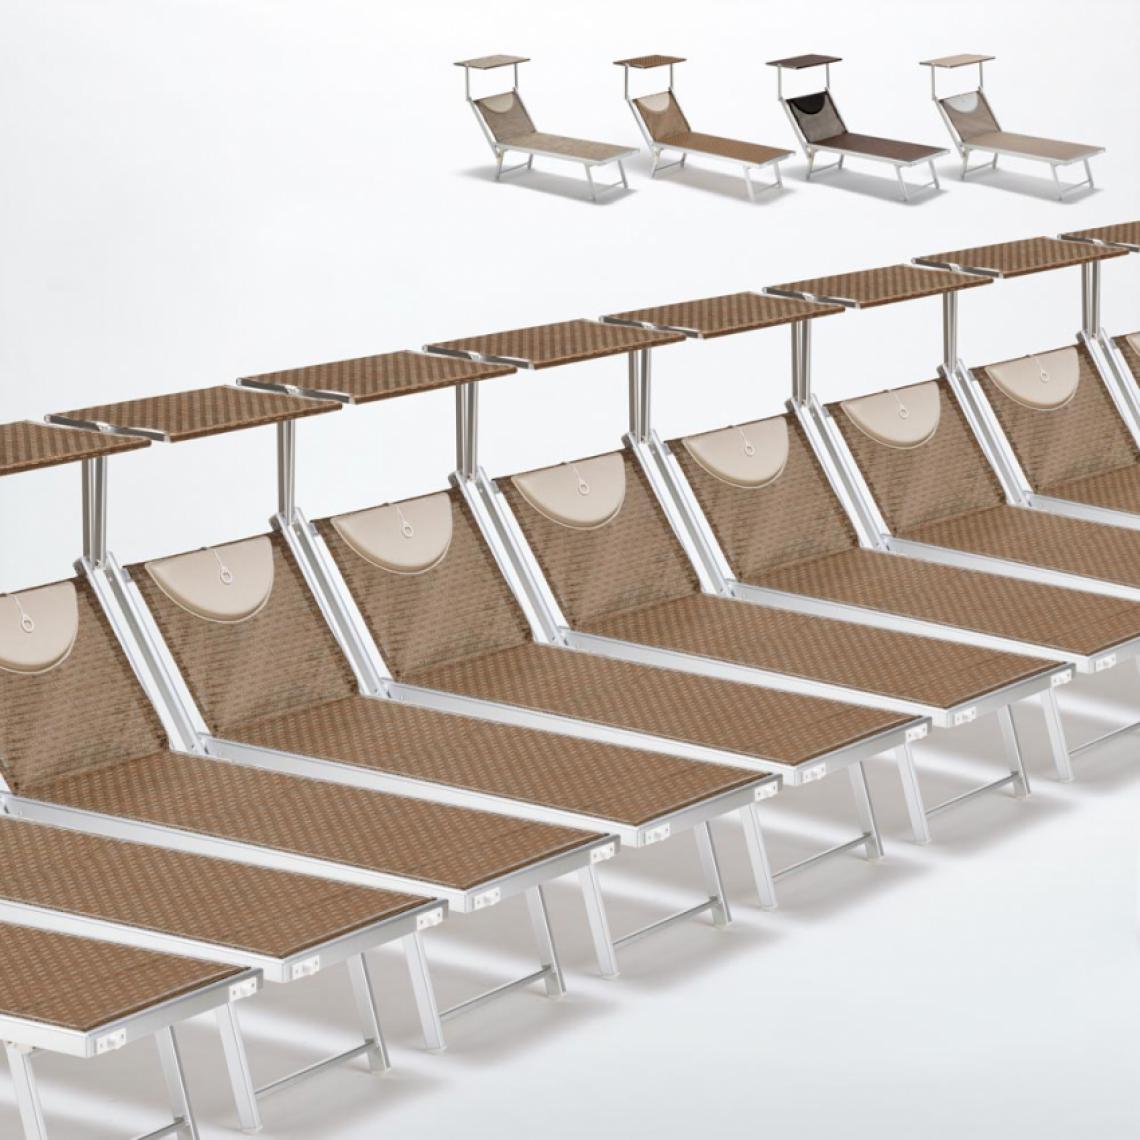 Beach And Garden Design - Bain de soleil transats piscine aluminium lits de plage Santorini Limited Edition 20 pcs, Couleur: Moka - Marron Santorini - Transats, chaises longues